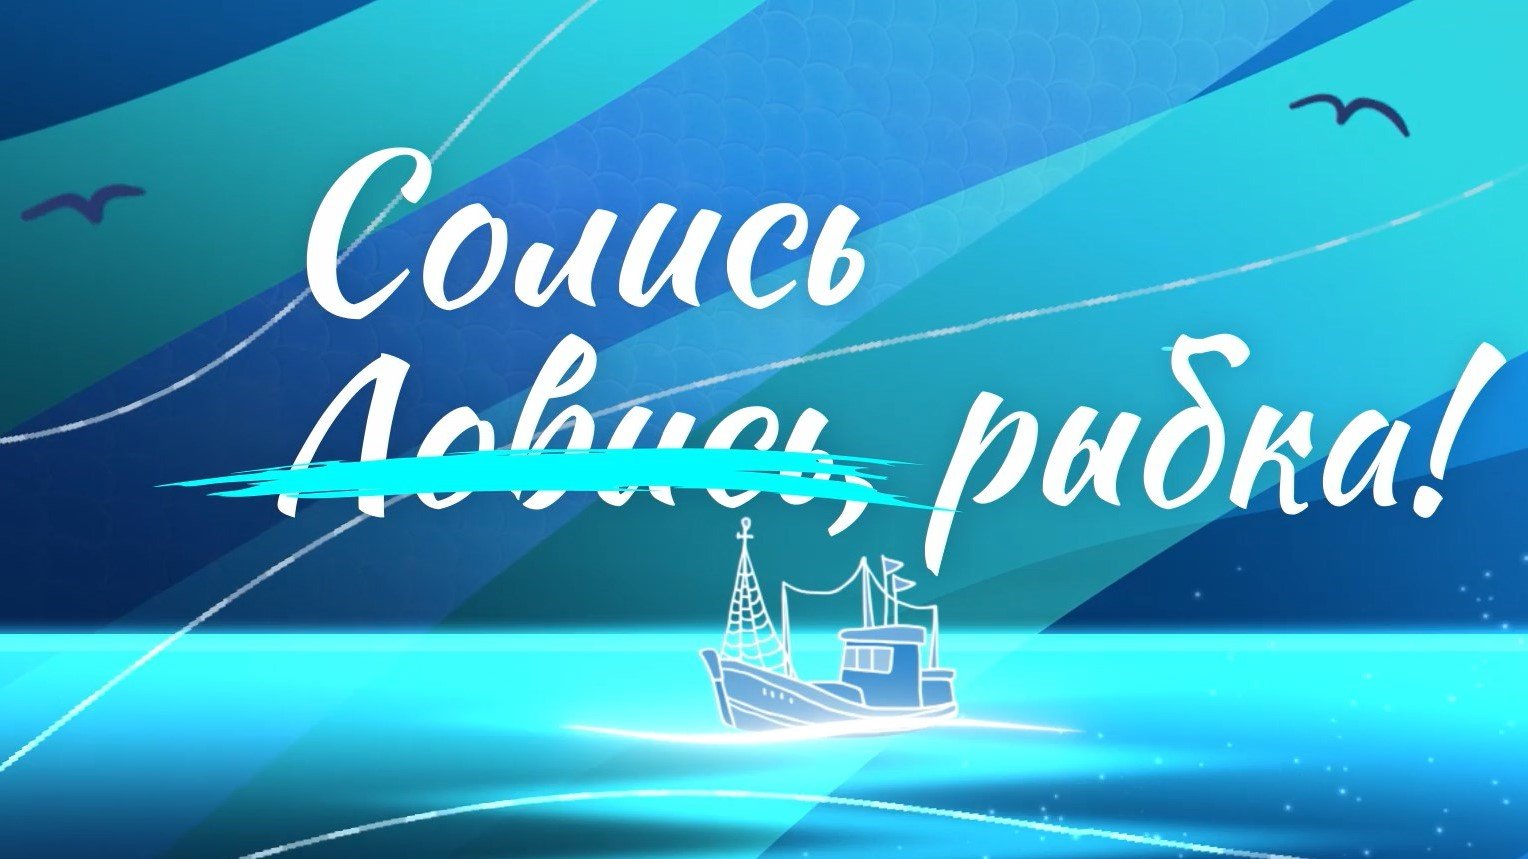 Черноморская хамса: как добывают и солят рыбу в Новороссийске? Специальный репортаж «Солись, рыбка!»